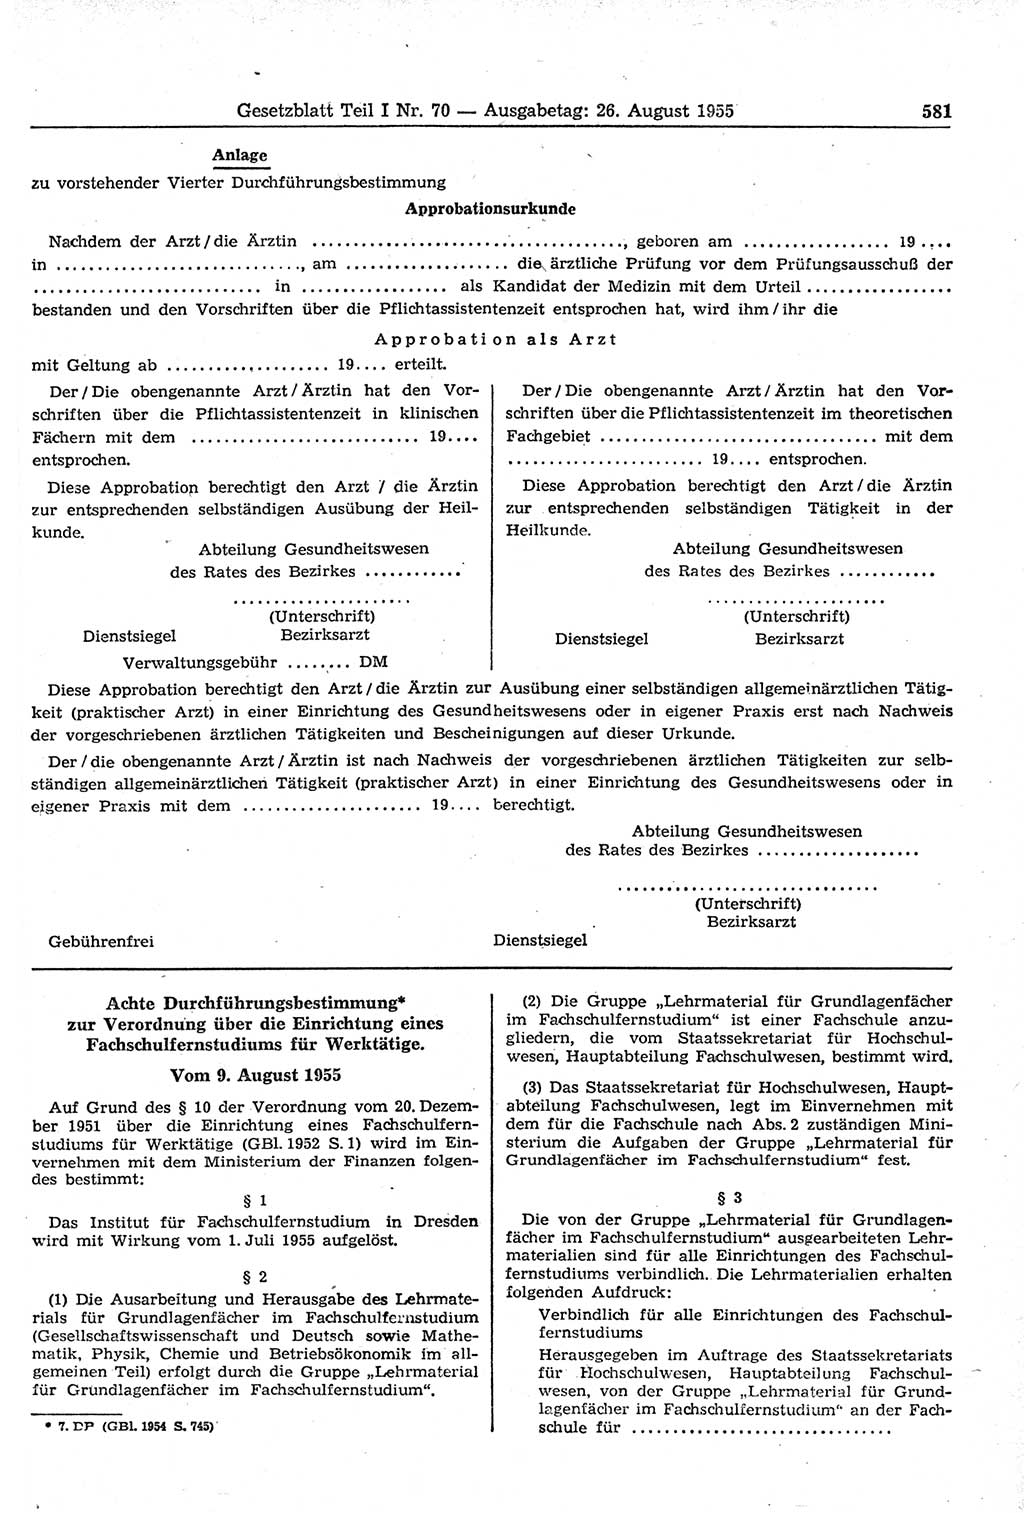 Gesetzblatt (GBl.) der Deutschen Demokratischen Republik (DDR) Teil Ⅰ 1955, Seite 581 (GBl. DDR Ⅰ 1955, S. 581)